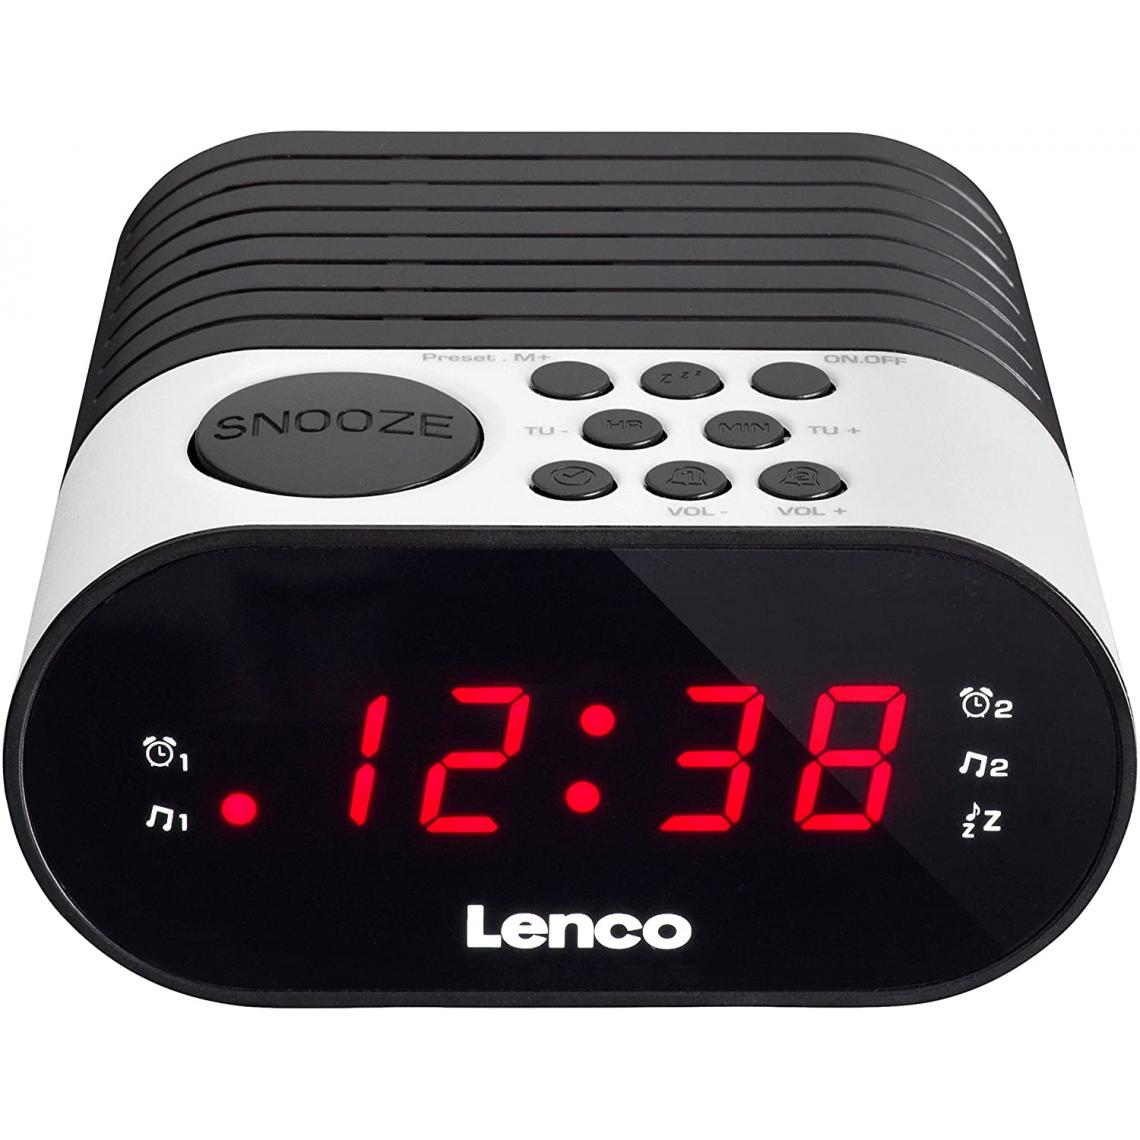 Lenco - radio réveil FM avec double alarme noir blanc - Radio